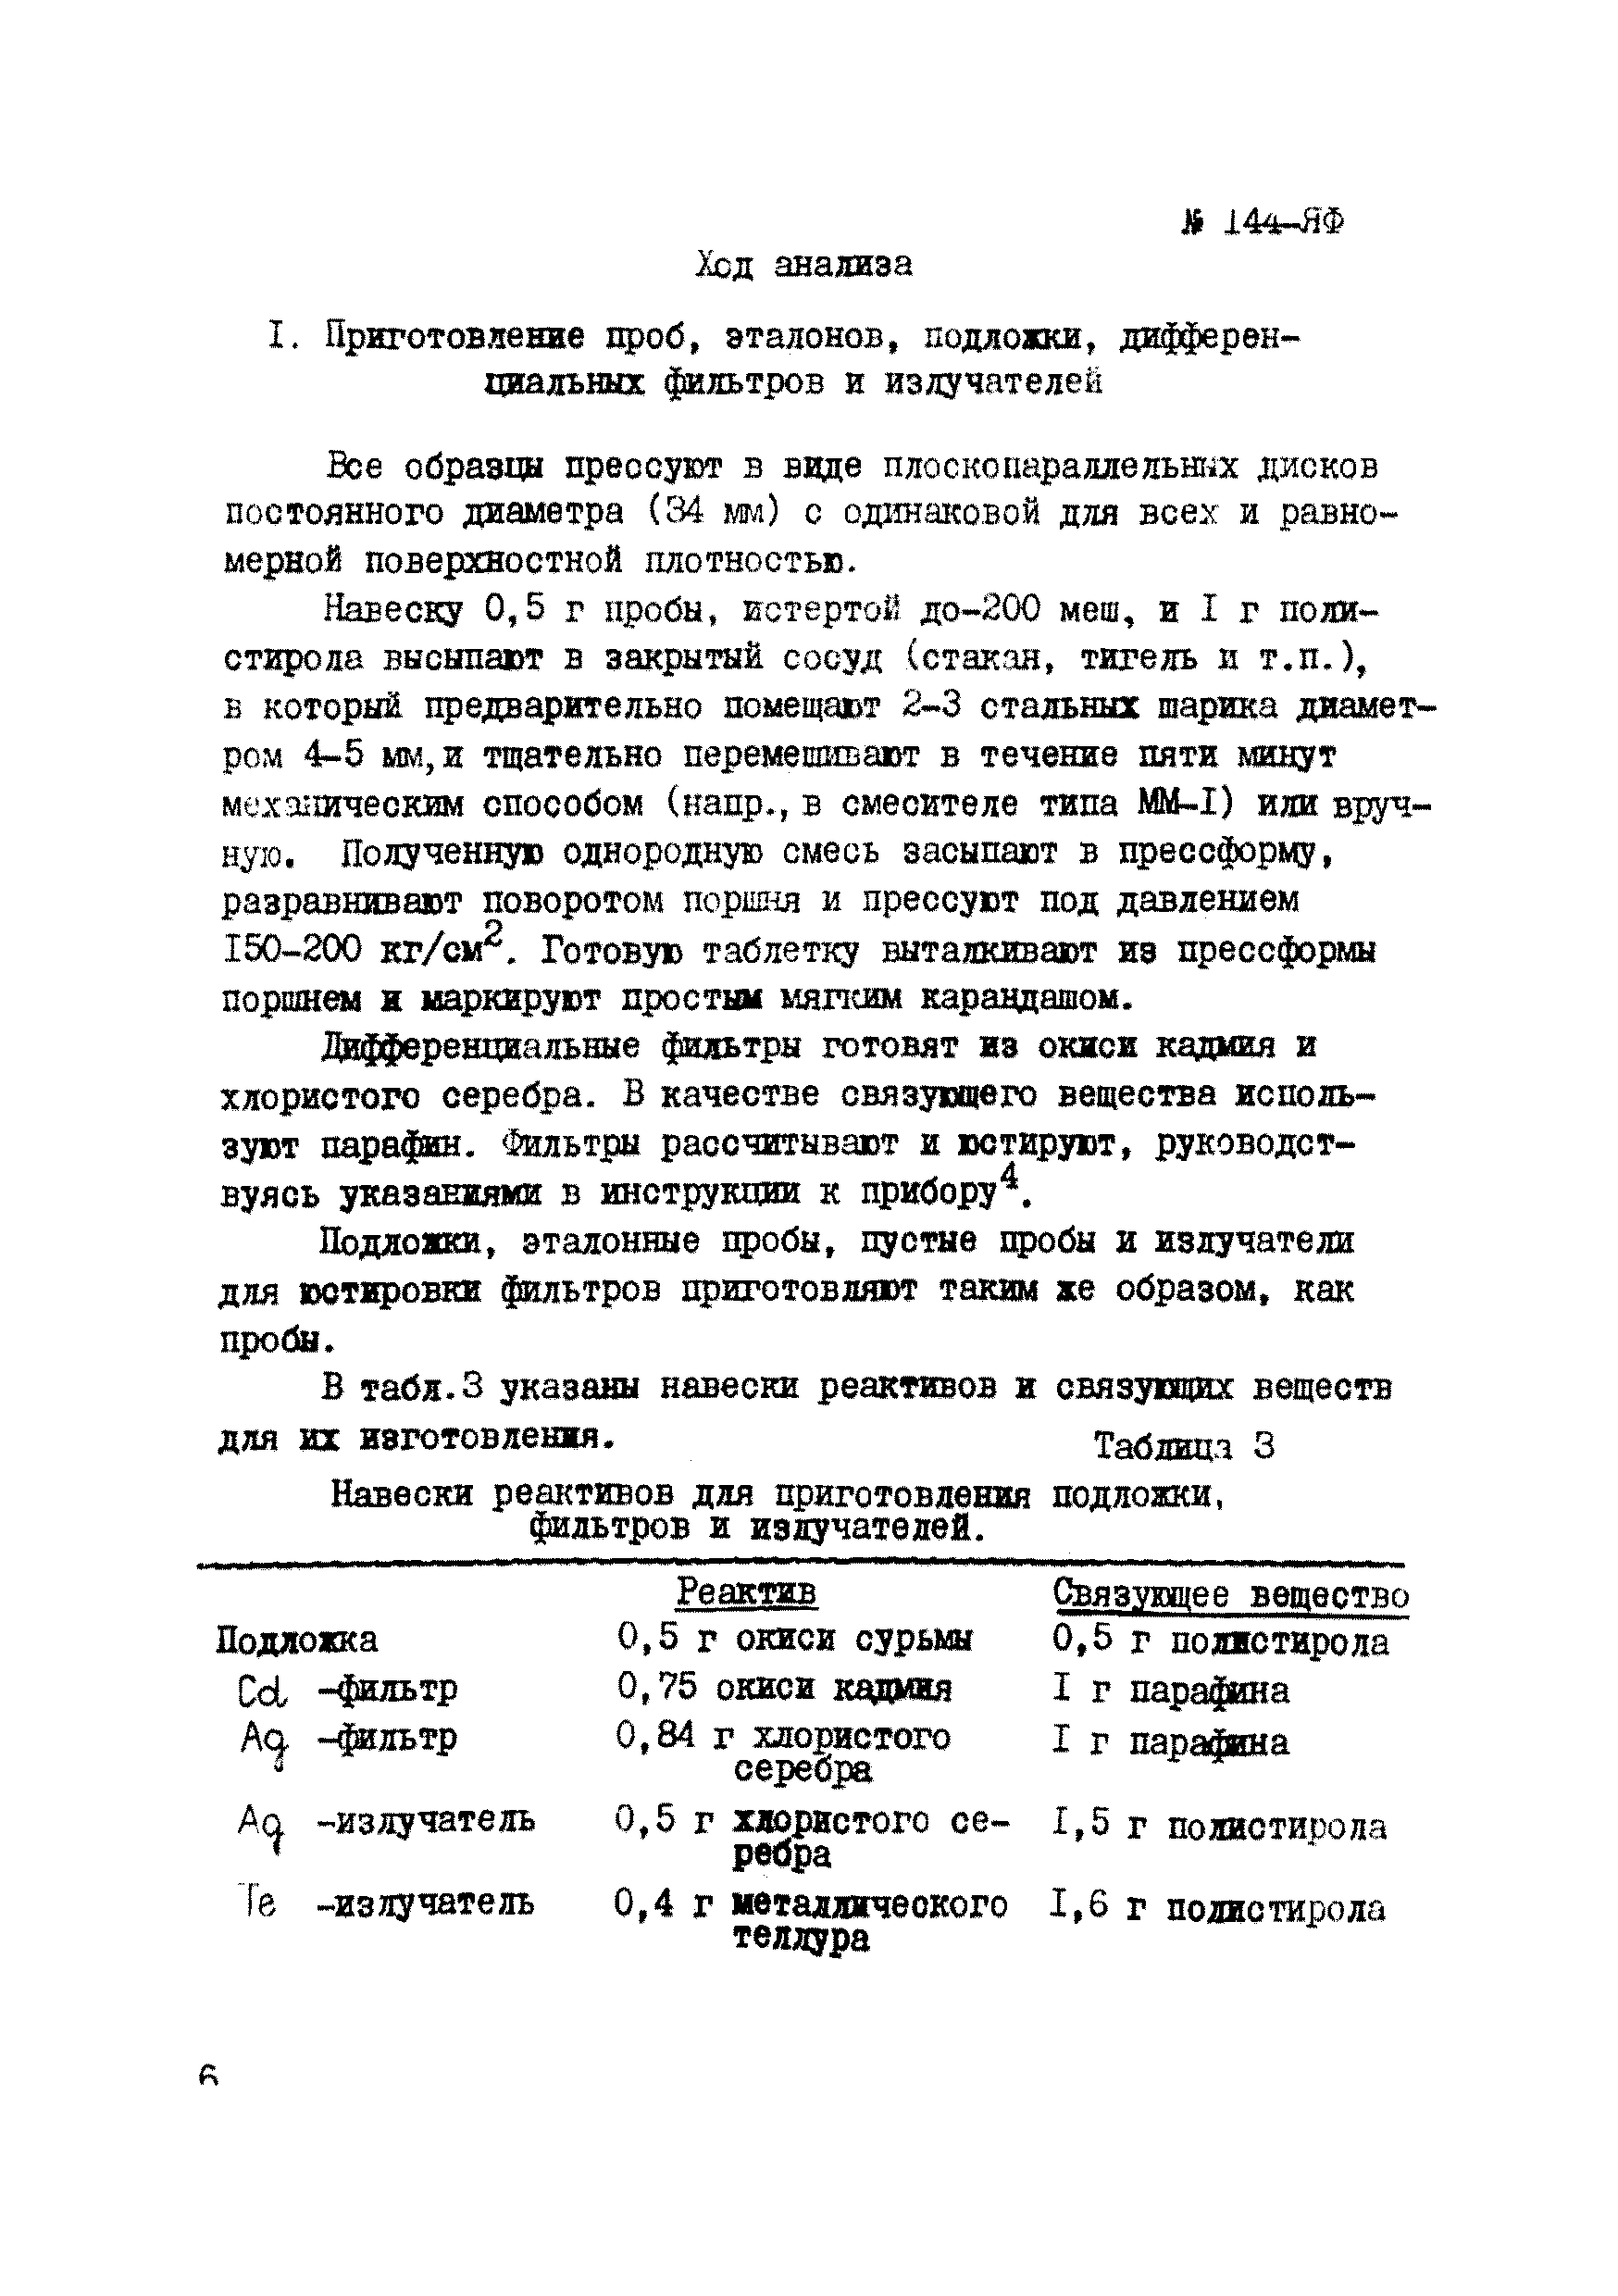 Инструкция НСАМ 144,145-ЯФ